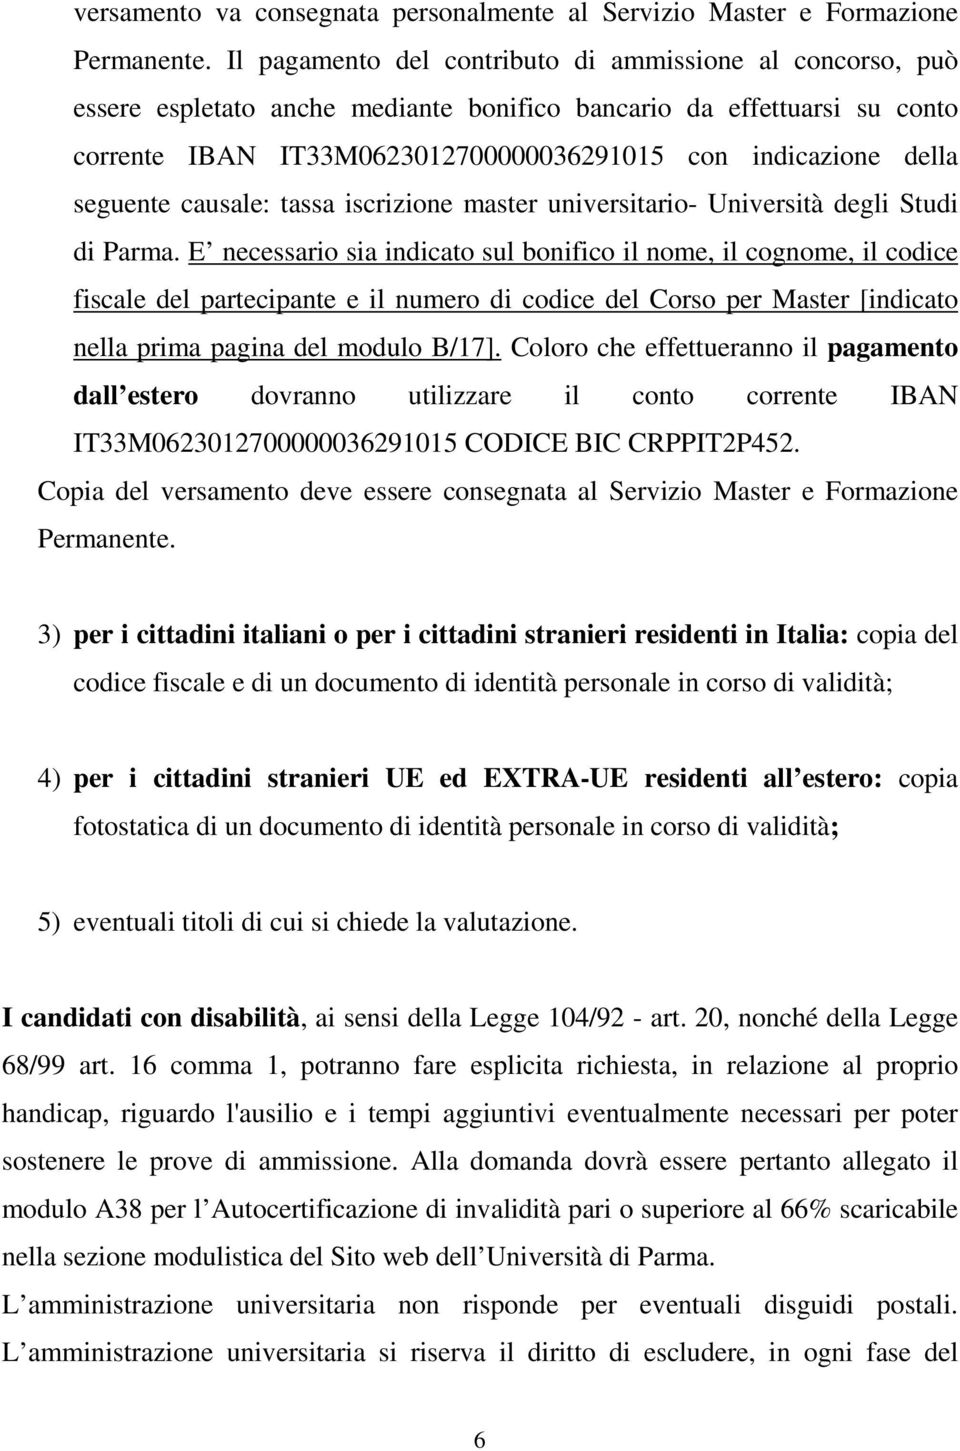 seguente causale: tassa iscrizione master universitario- Università degli Studi di Parma.